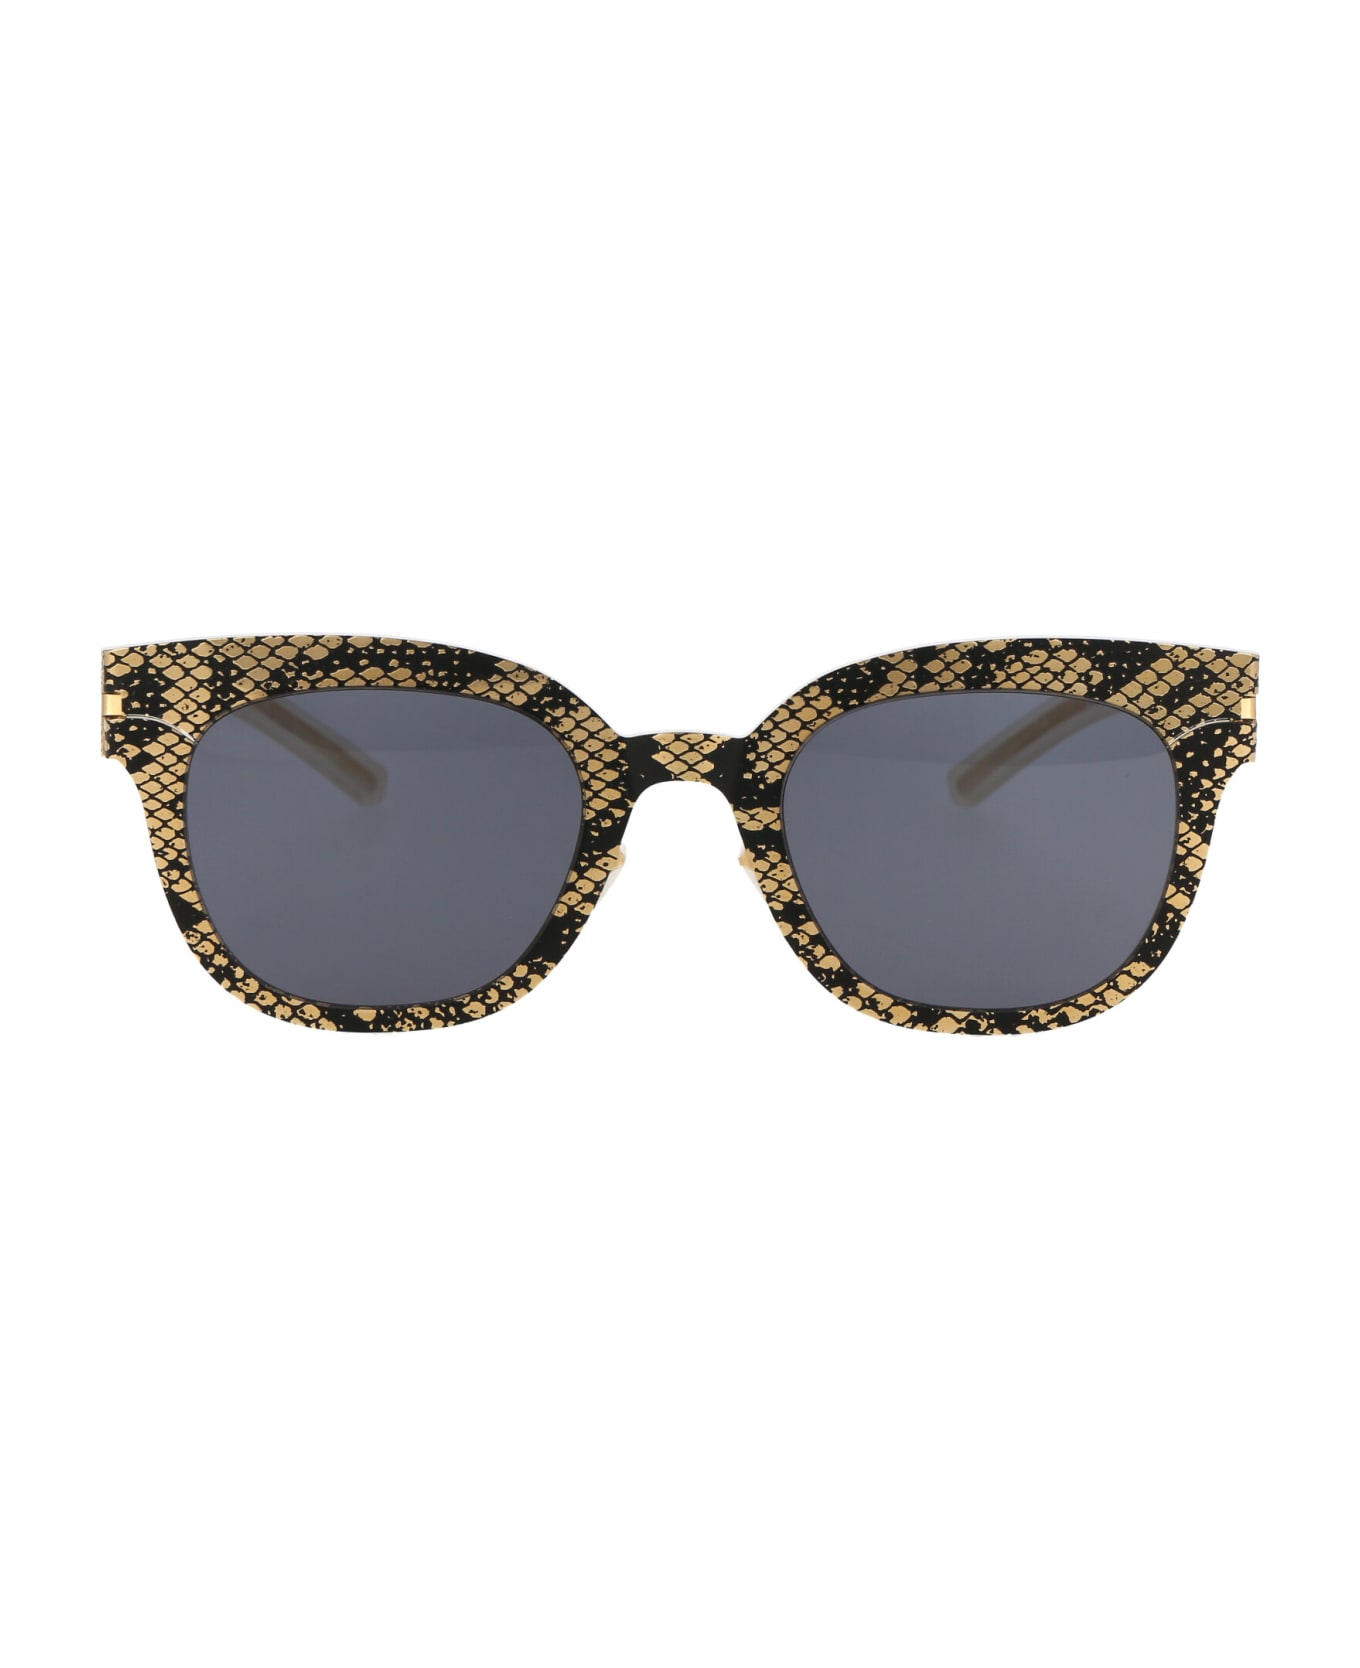 Mykita Mmtransfer002 Sunglasses - 239 Gold Black Python Dark Grey Solid サングラス